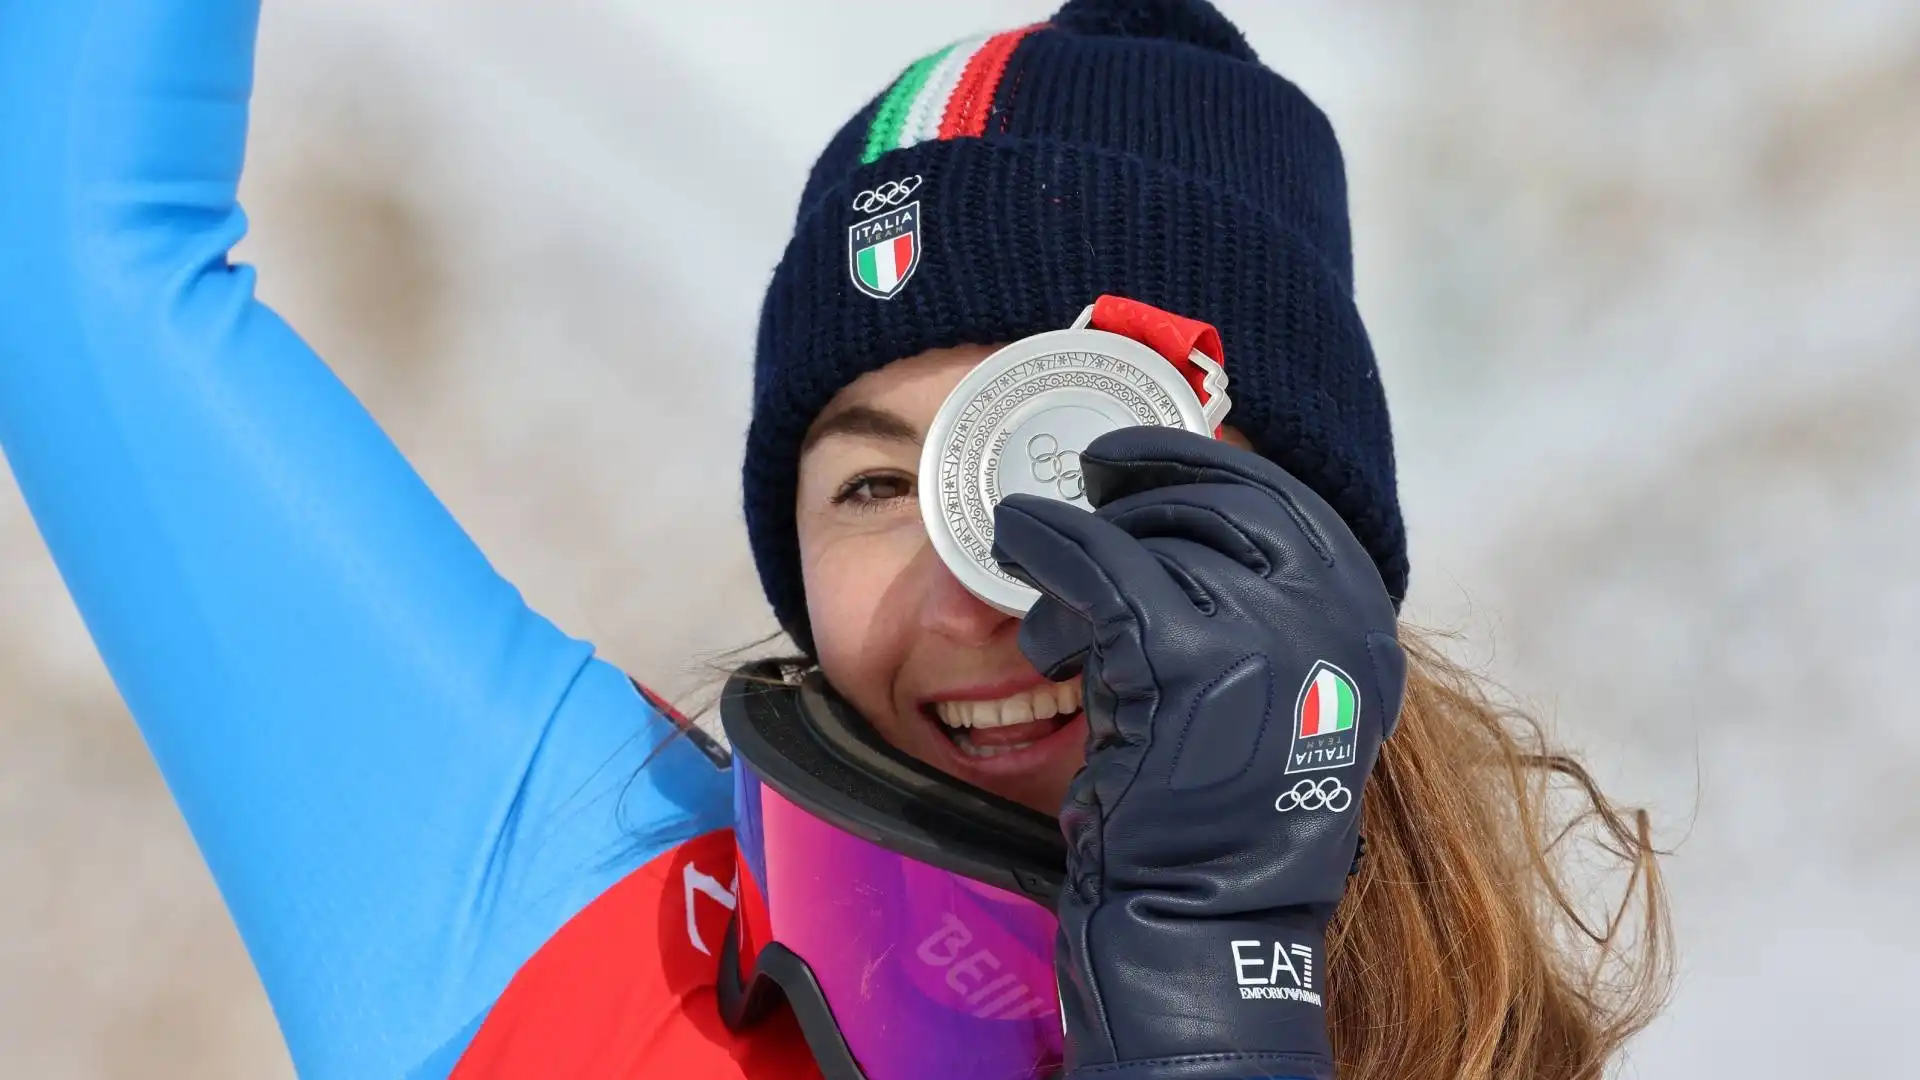 Sofia Goggia nella sua carriera ha vinto due medaglie olimpiche, entrambe in discesa libera: l'oro a Pyeongchang 2018 e l'argento a Pechino 2022